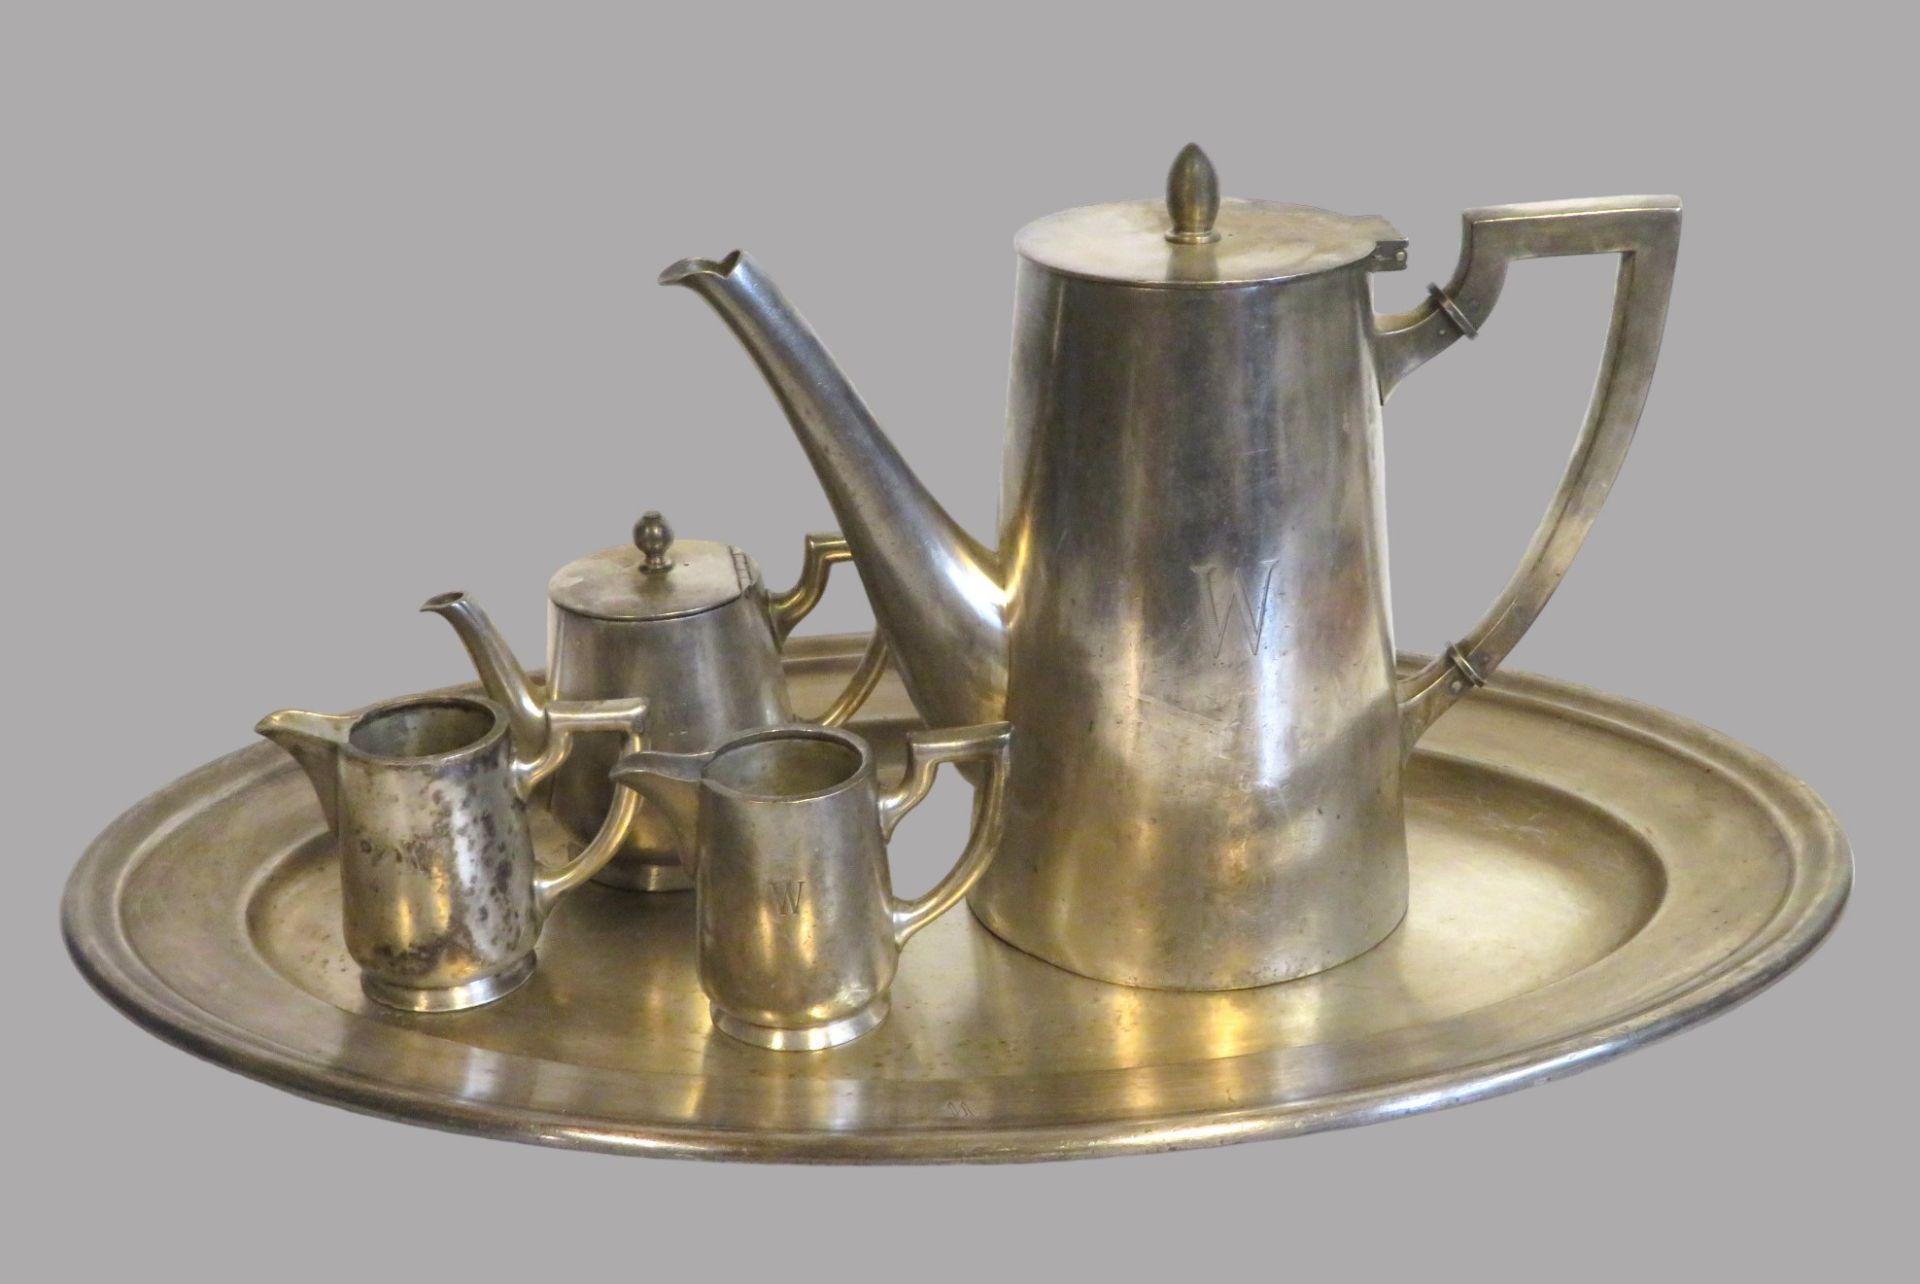 5 teiliges Konvolut diverser versilberter Objekte, bestehend aus Kaffeekanne, Mokkakännchen, 2 Sahn